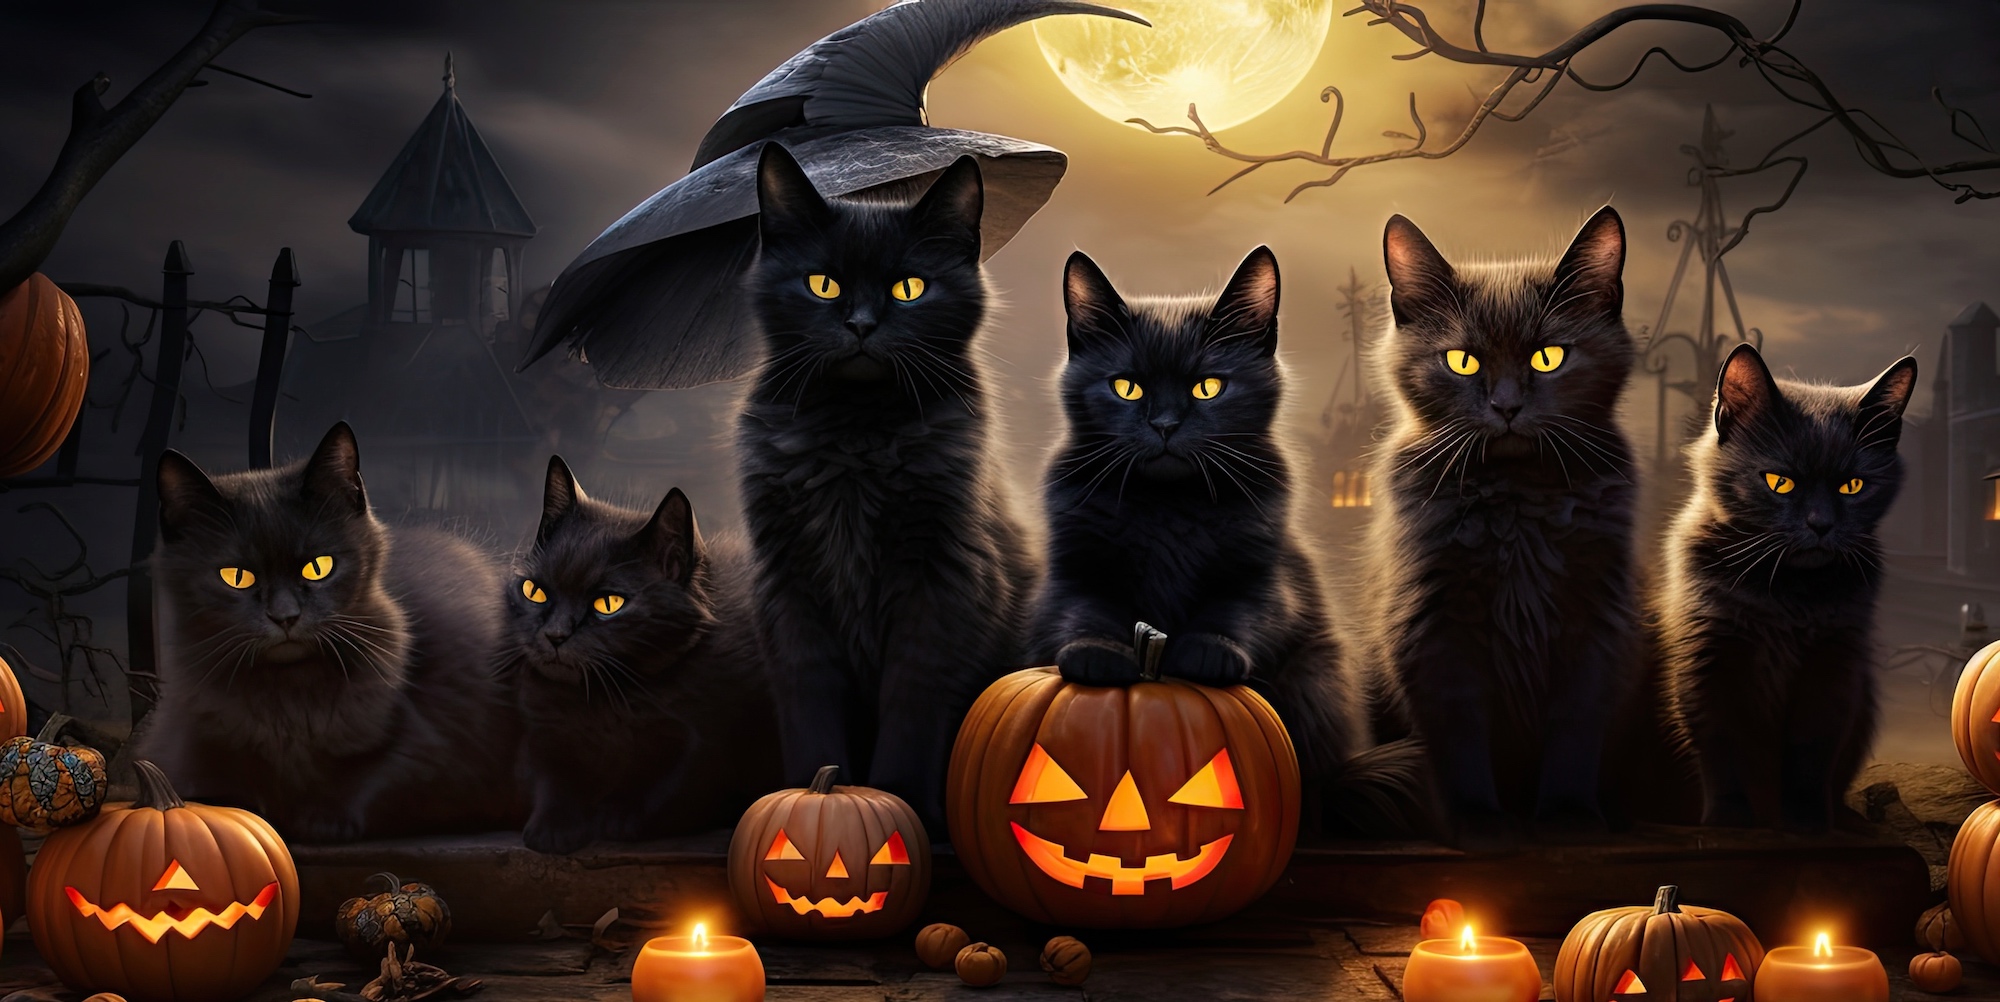 La superstition attachée au chat noir est tenace. Elle n’a pourtant bien sûr aucun fondement scientifique. © Postproduction, Adobe Stock